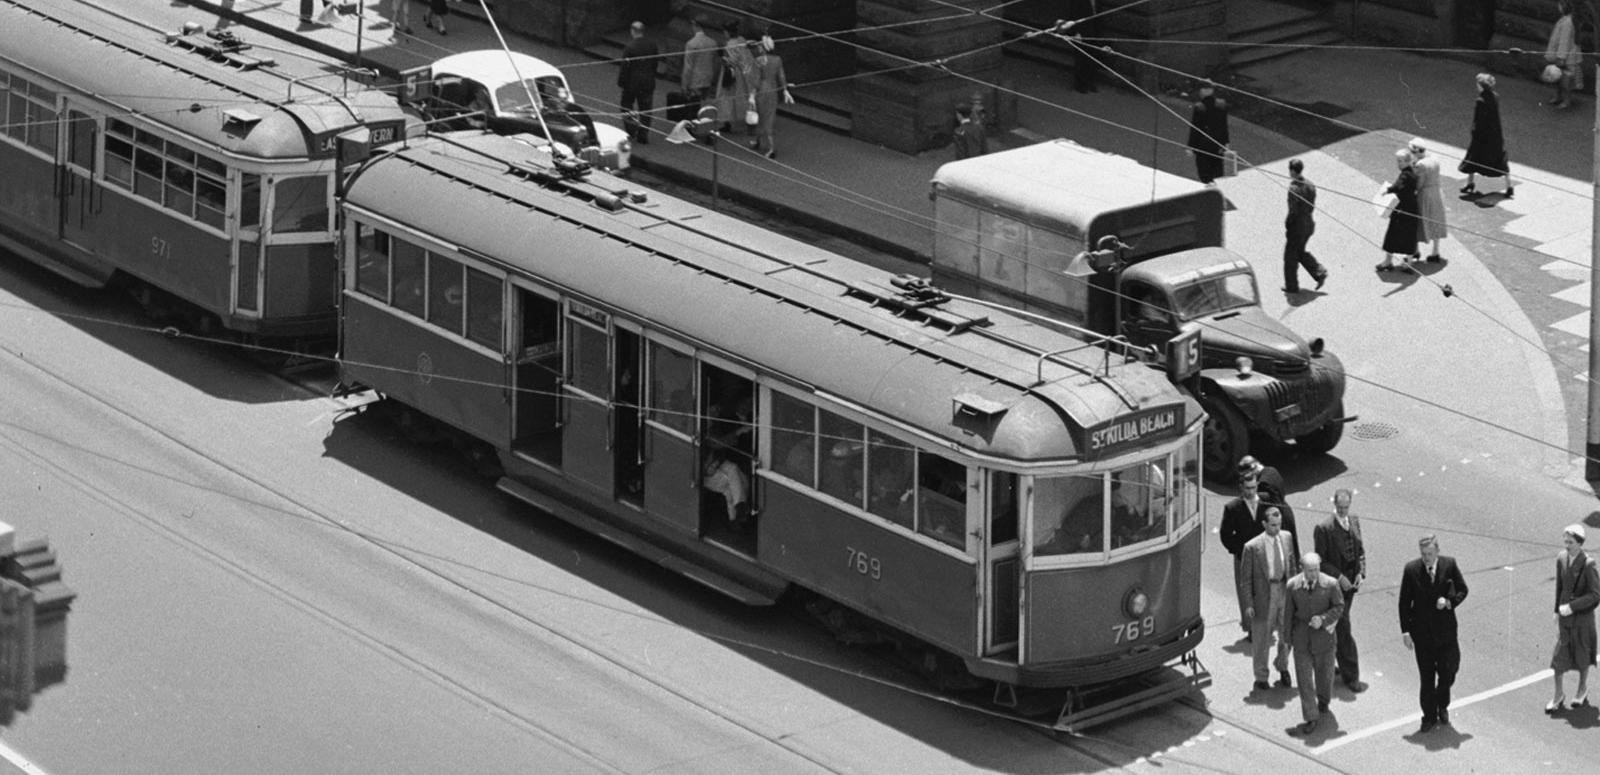 A melbourne tram, circa 1950s